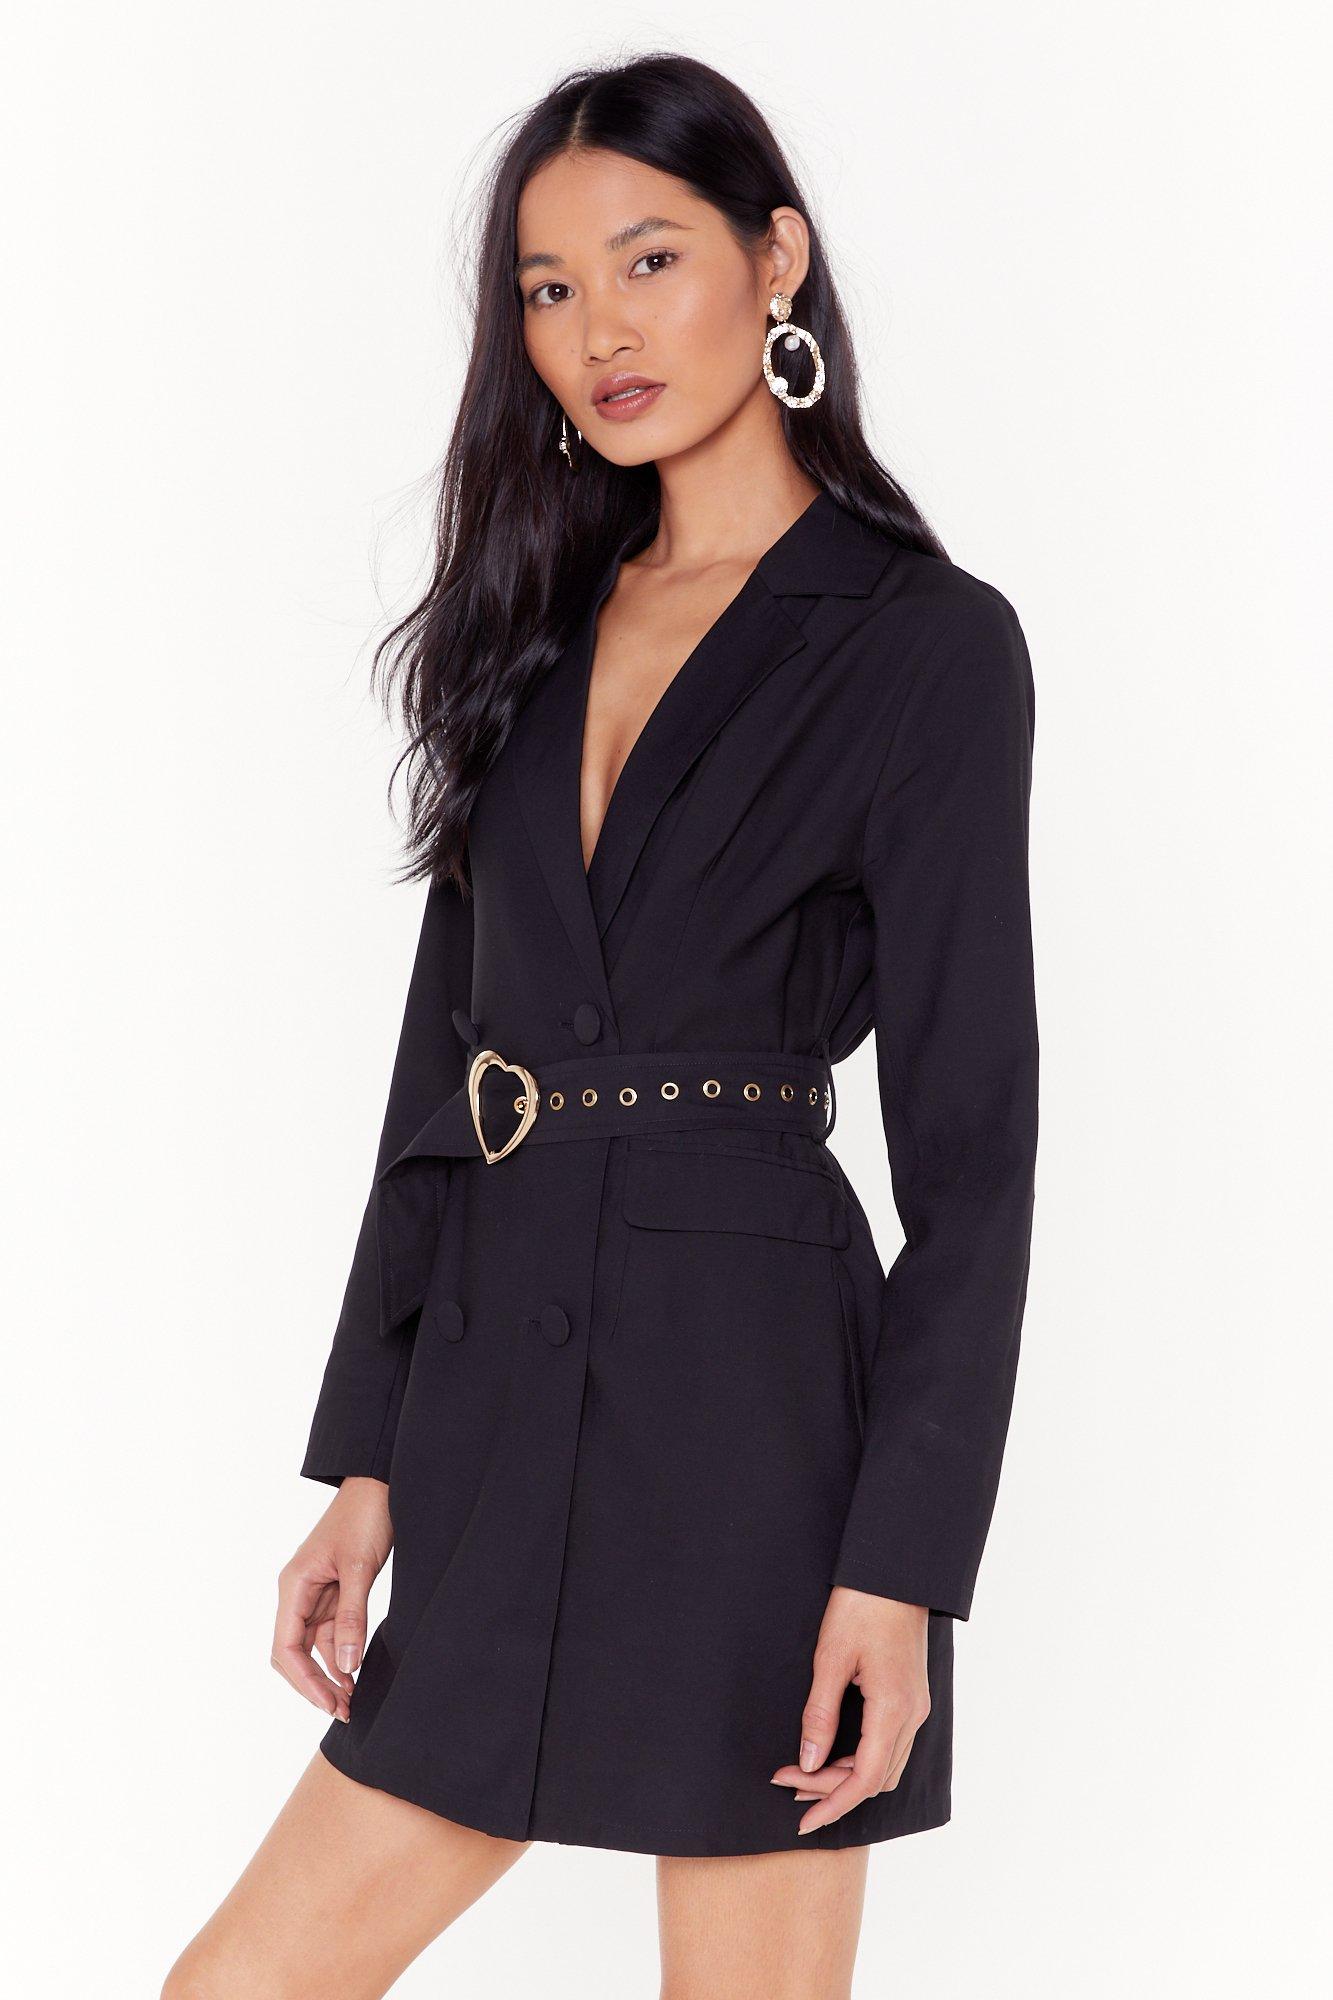 black blazer dress with belt